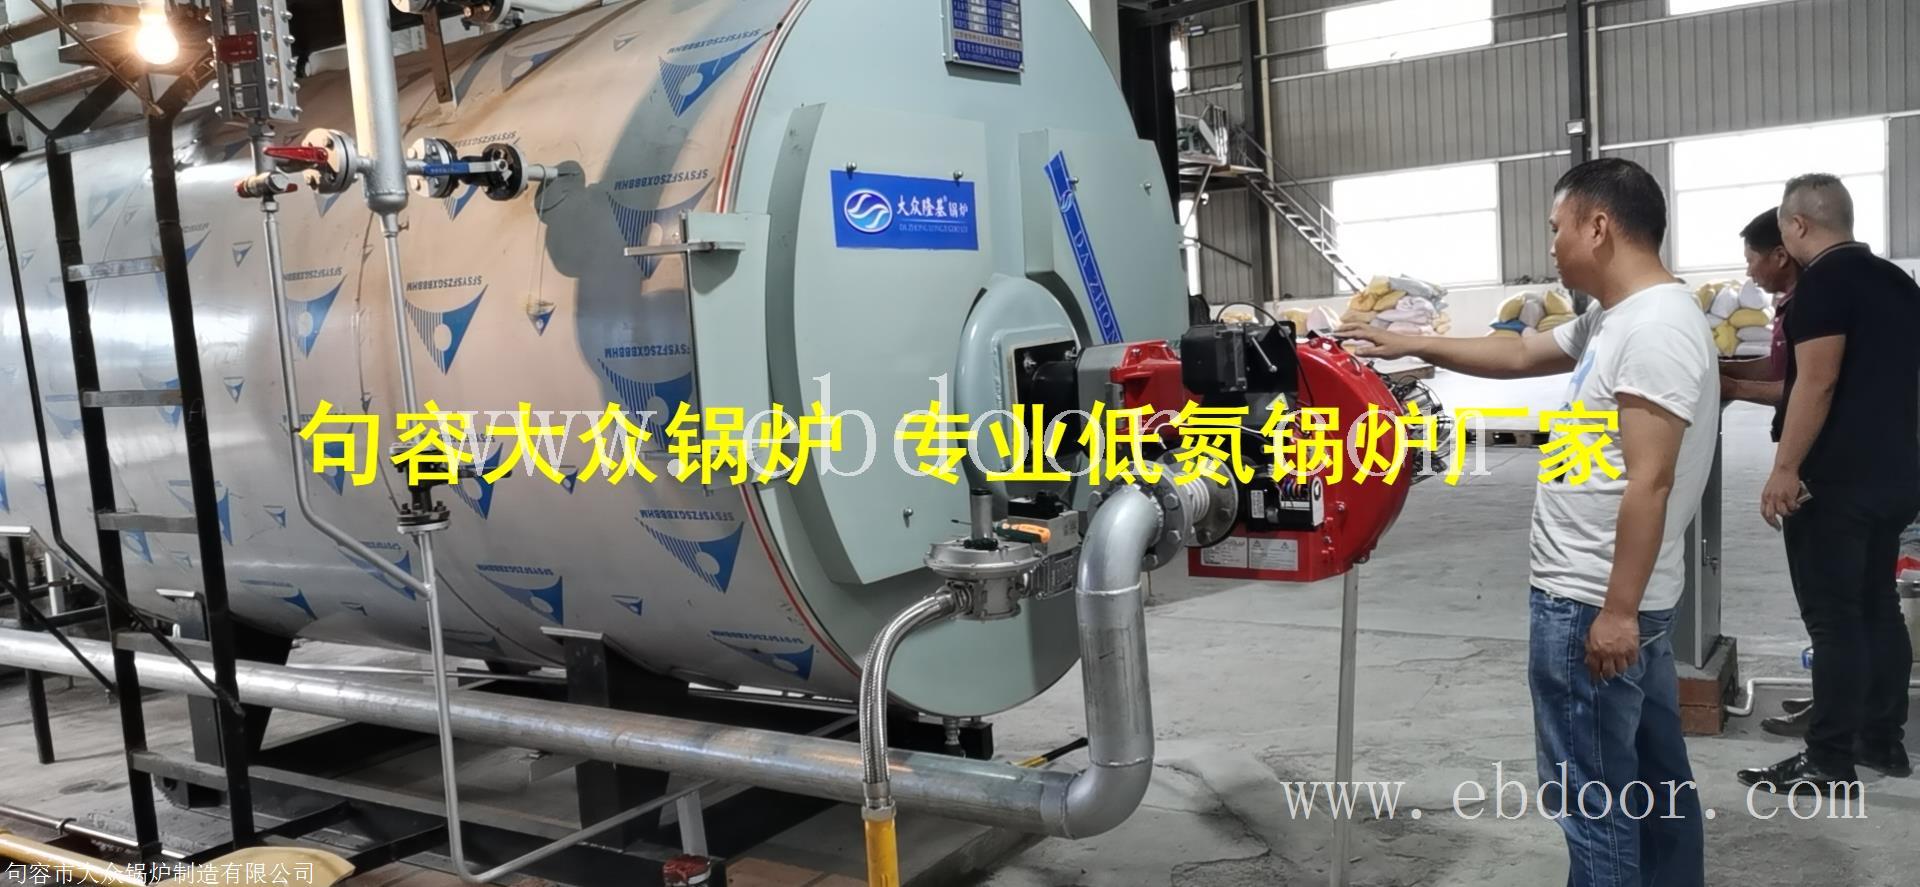 低氮锅炉的燃烧性能和使用方法江苏南通南京镇江低氮锅炉厂家